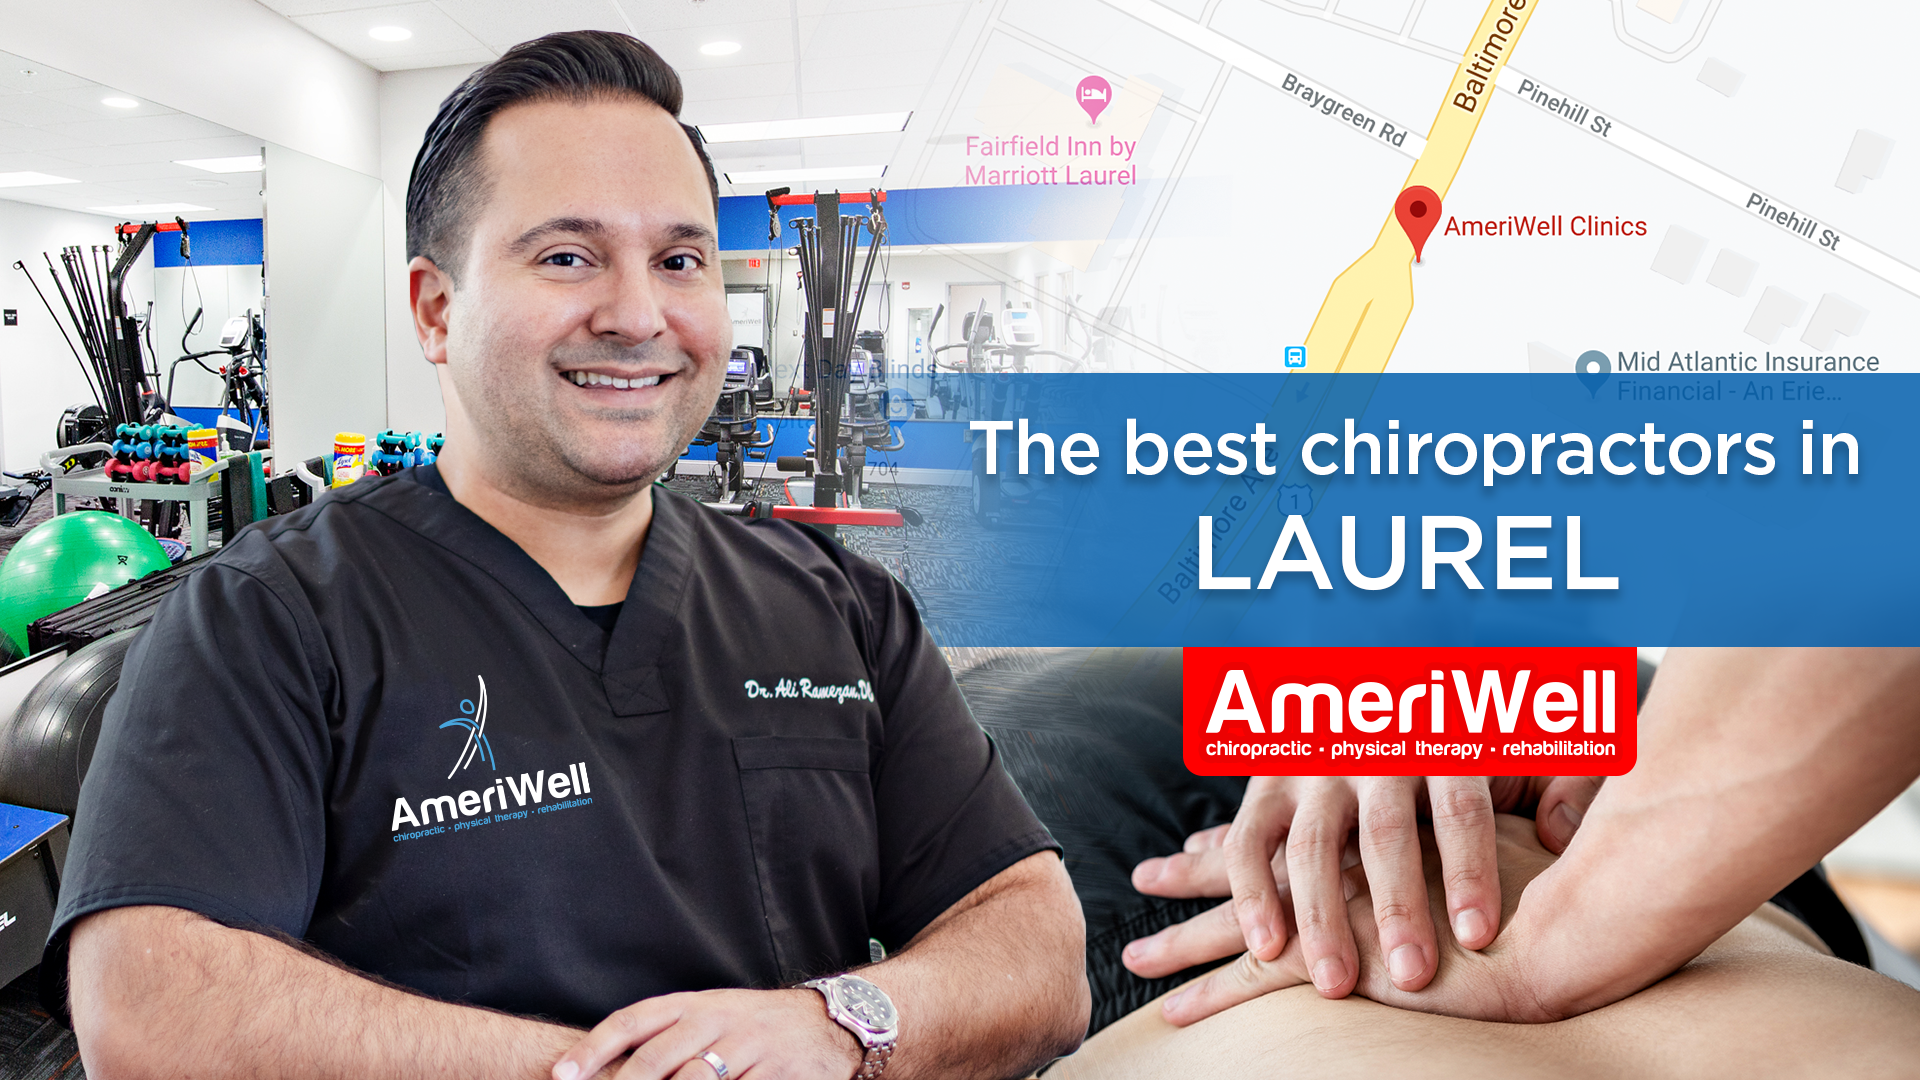 Laurel – Ameriwell Clinics the best chiropractors